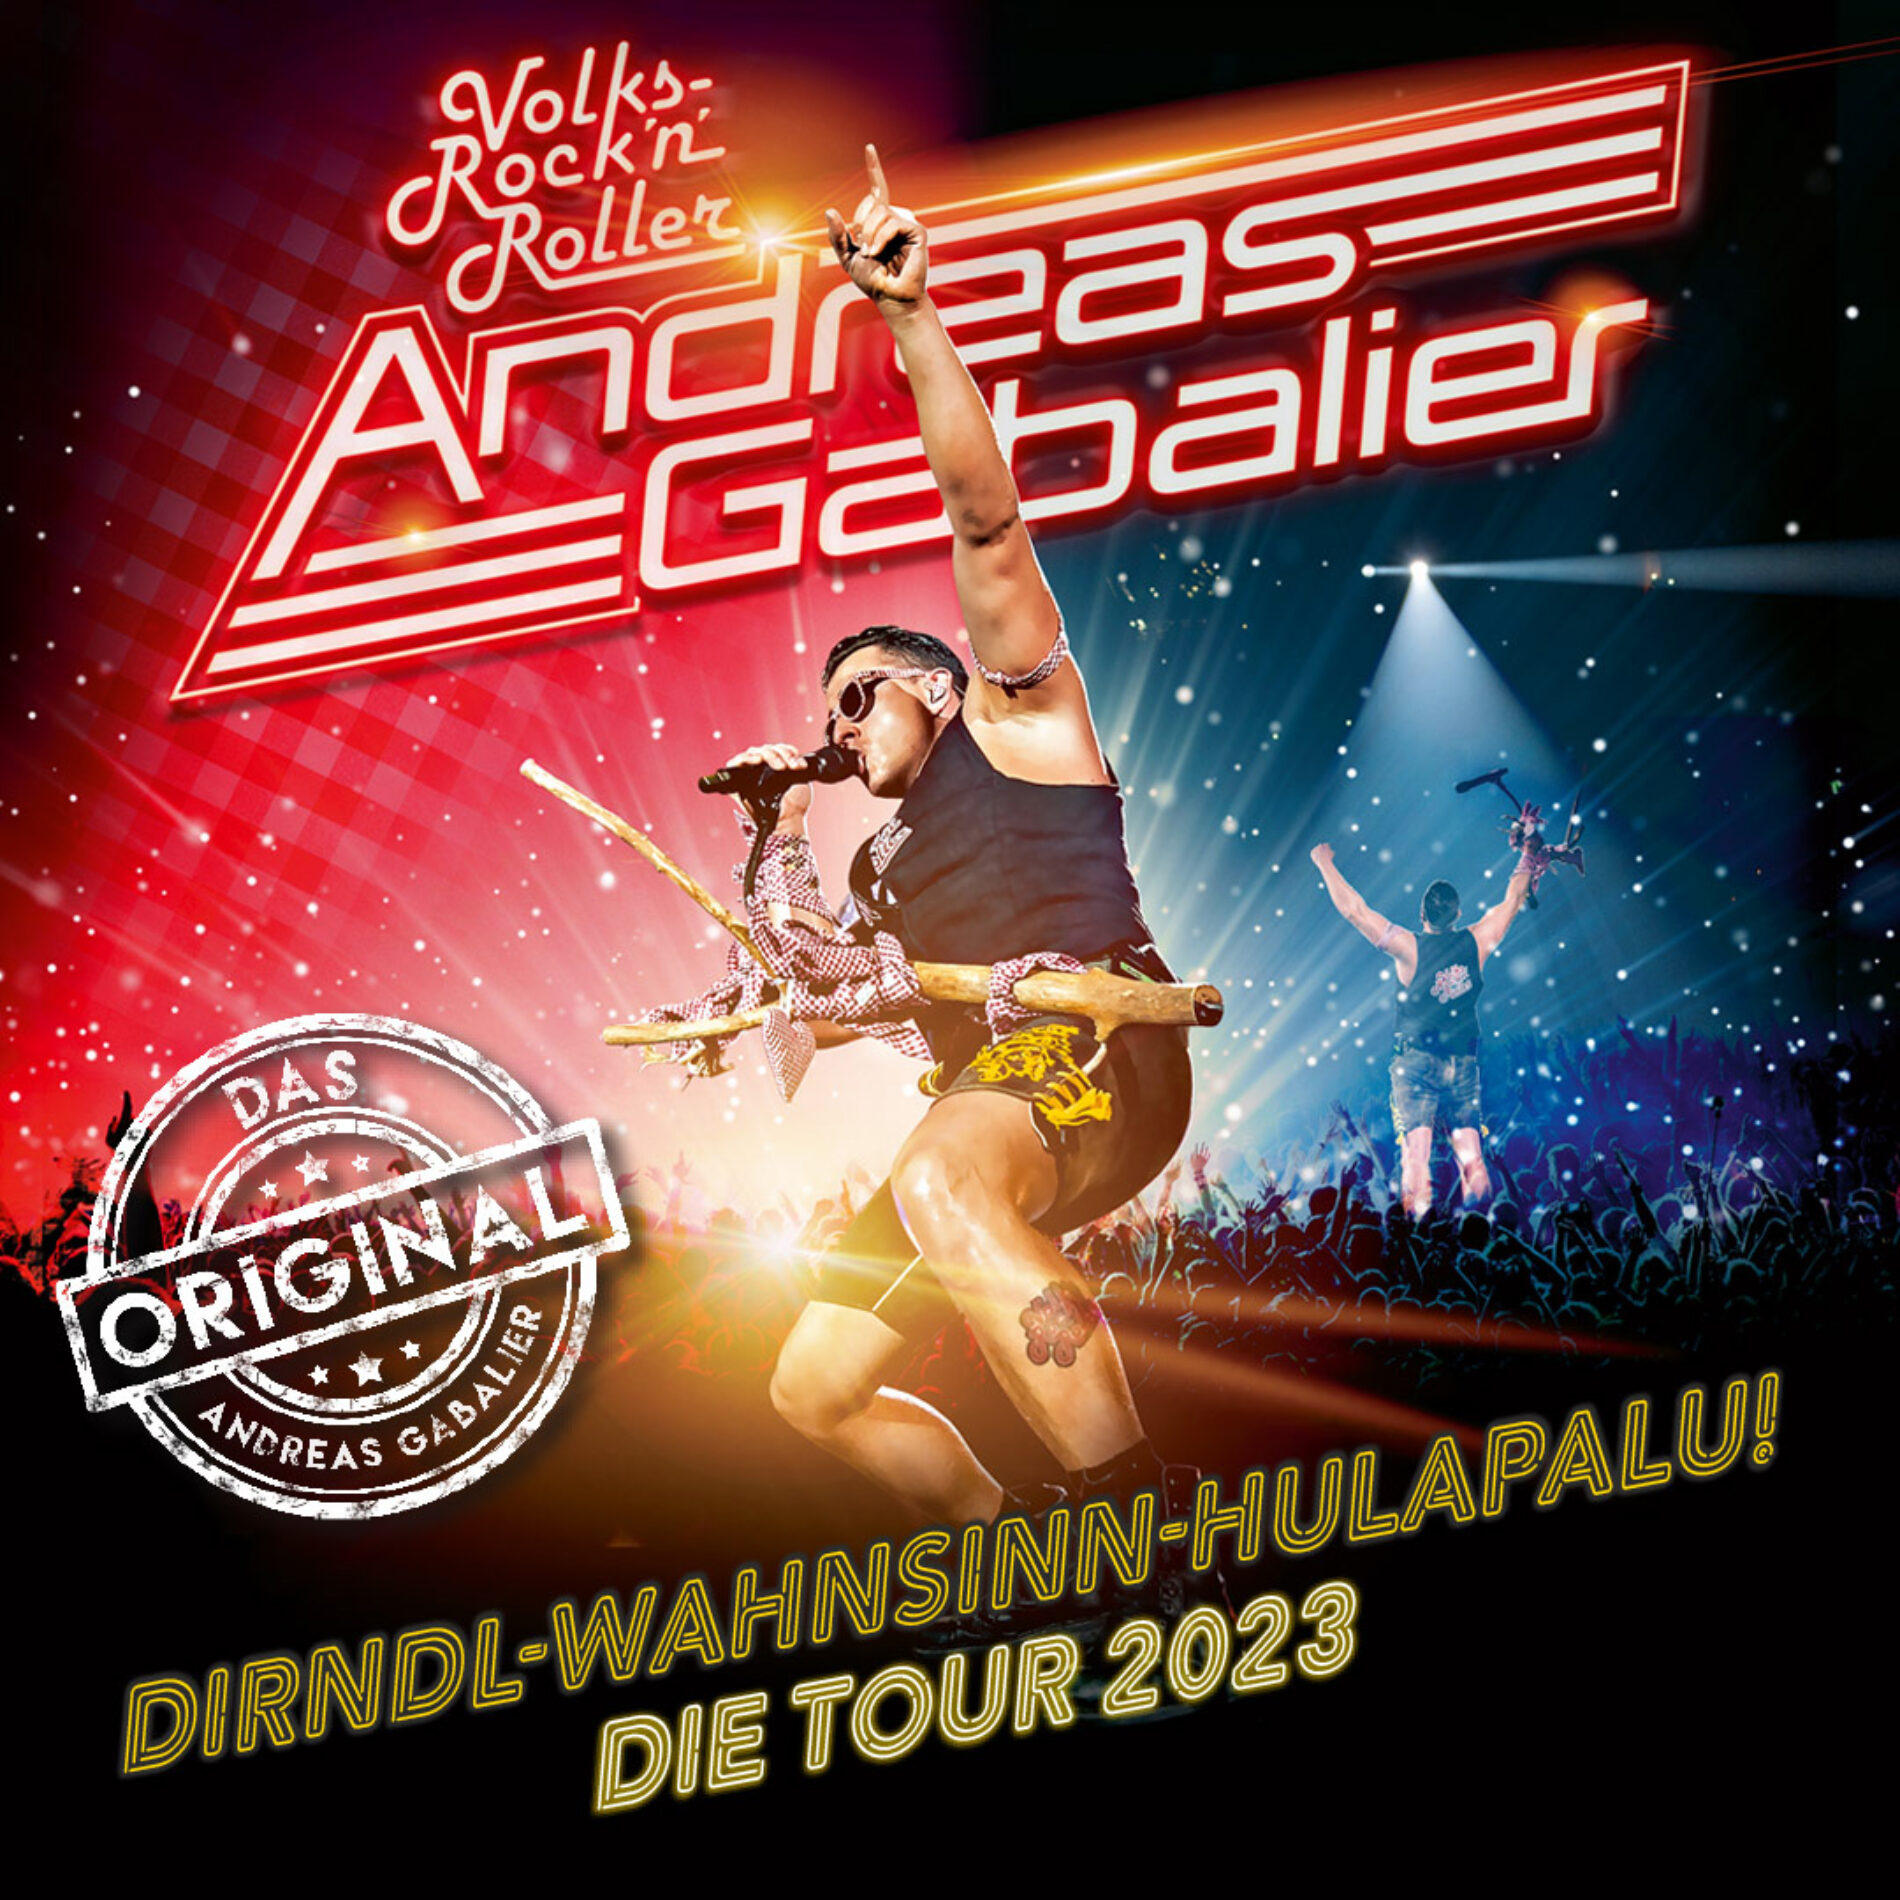 Andreas Gabalier – Tour 2023